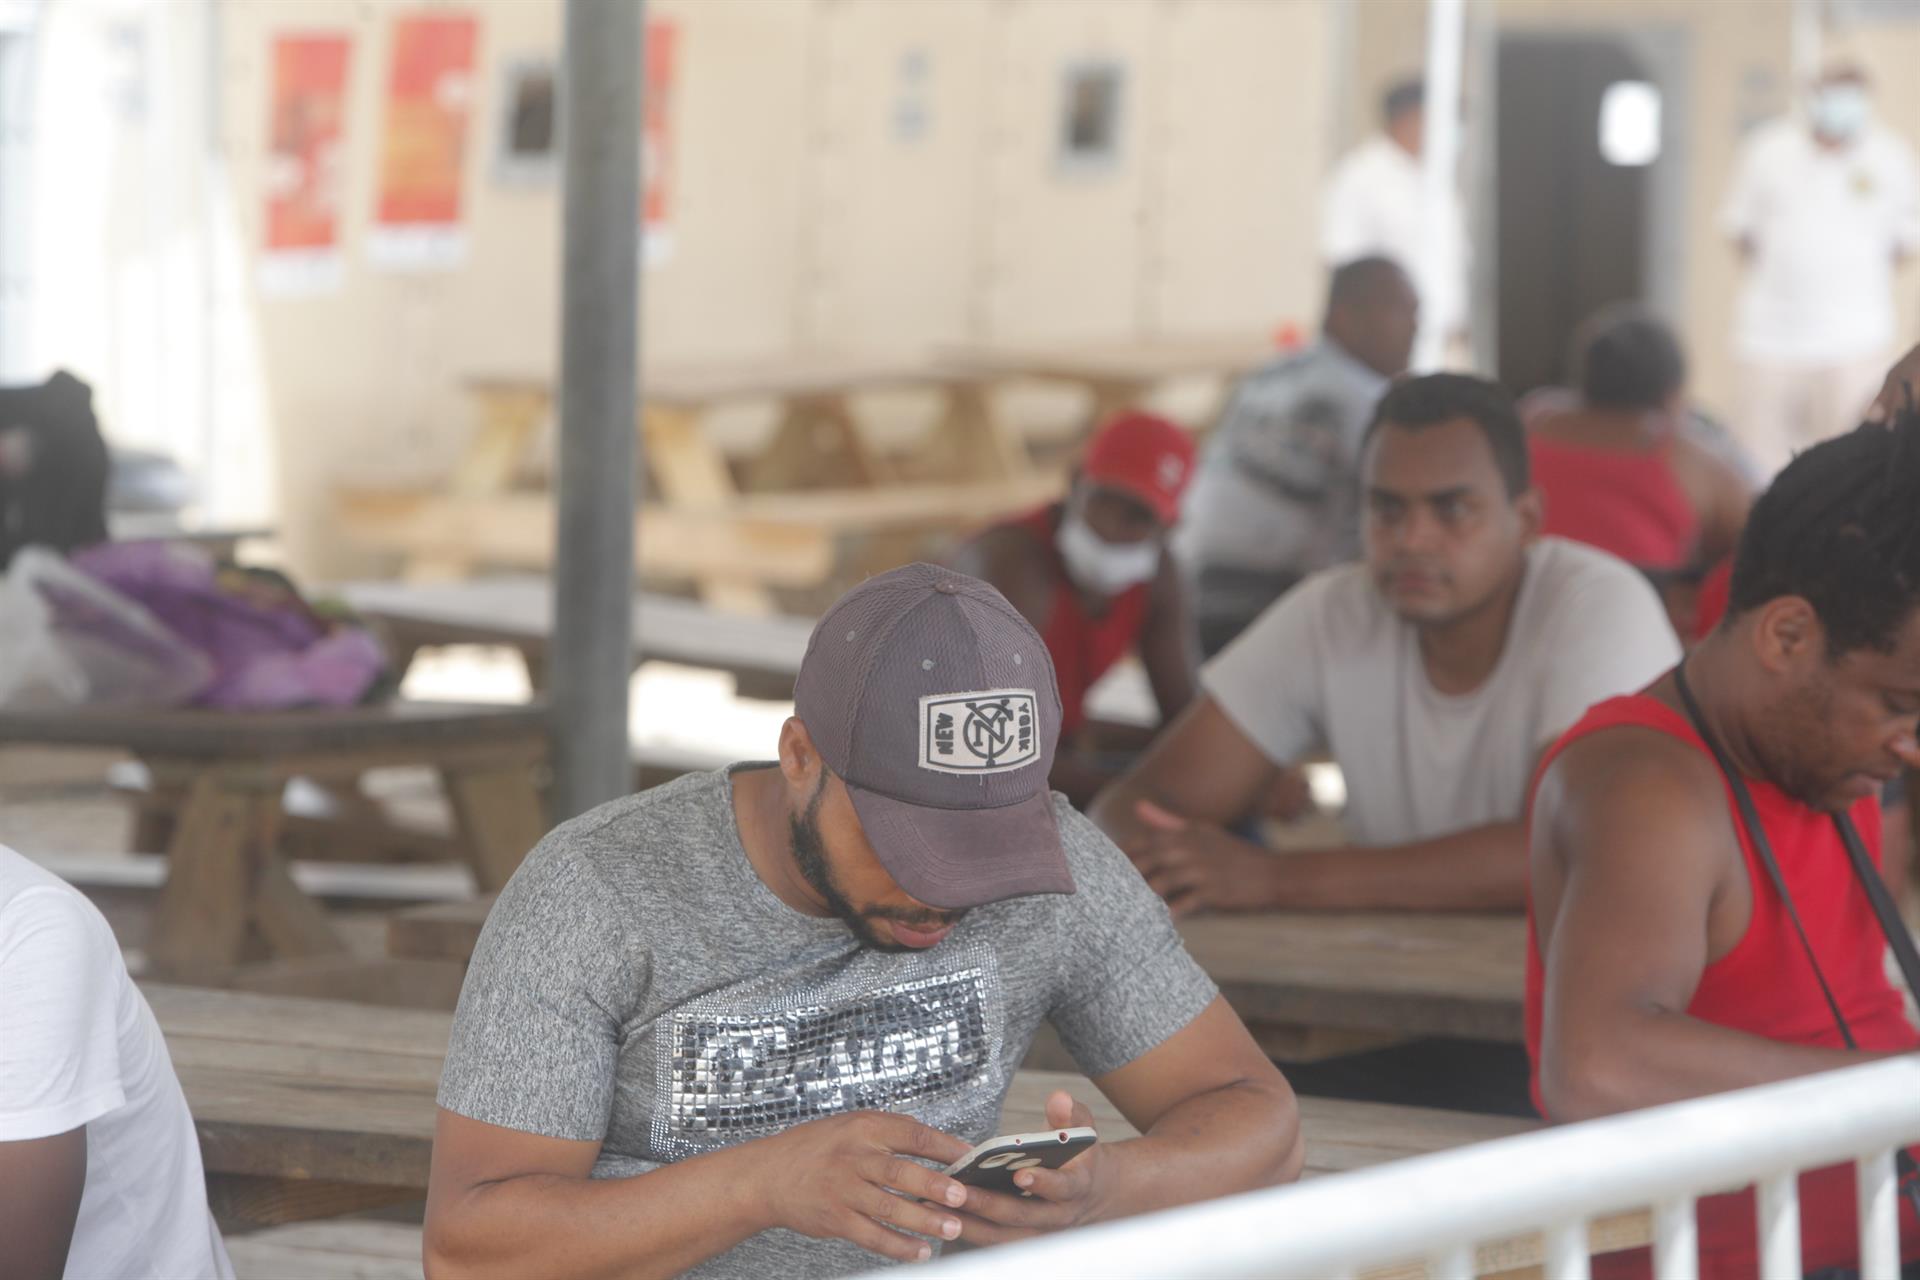 Un hombre es visto usando su celular en un campamento de migrantes procedentes de diversos países en Darién (Panamá). Imagen de archivo. EFE/ Carlos Lemos
